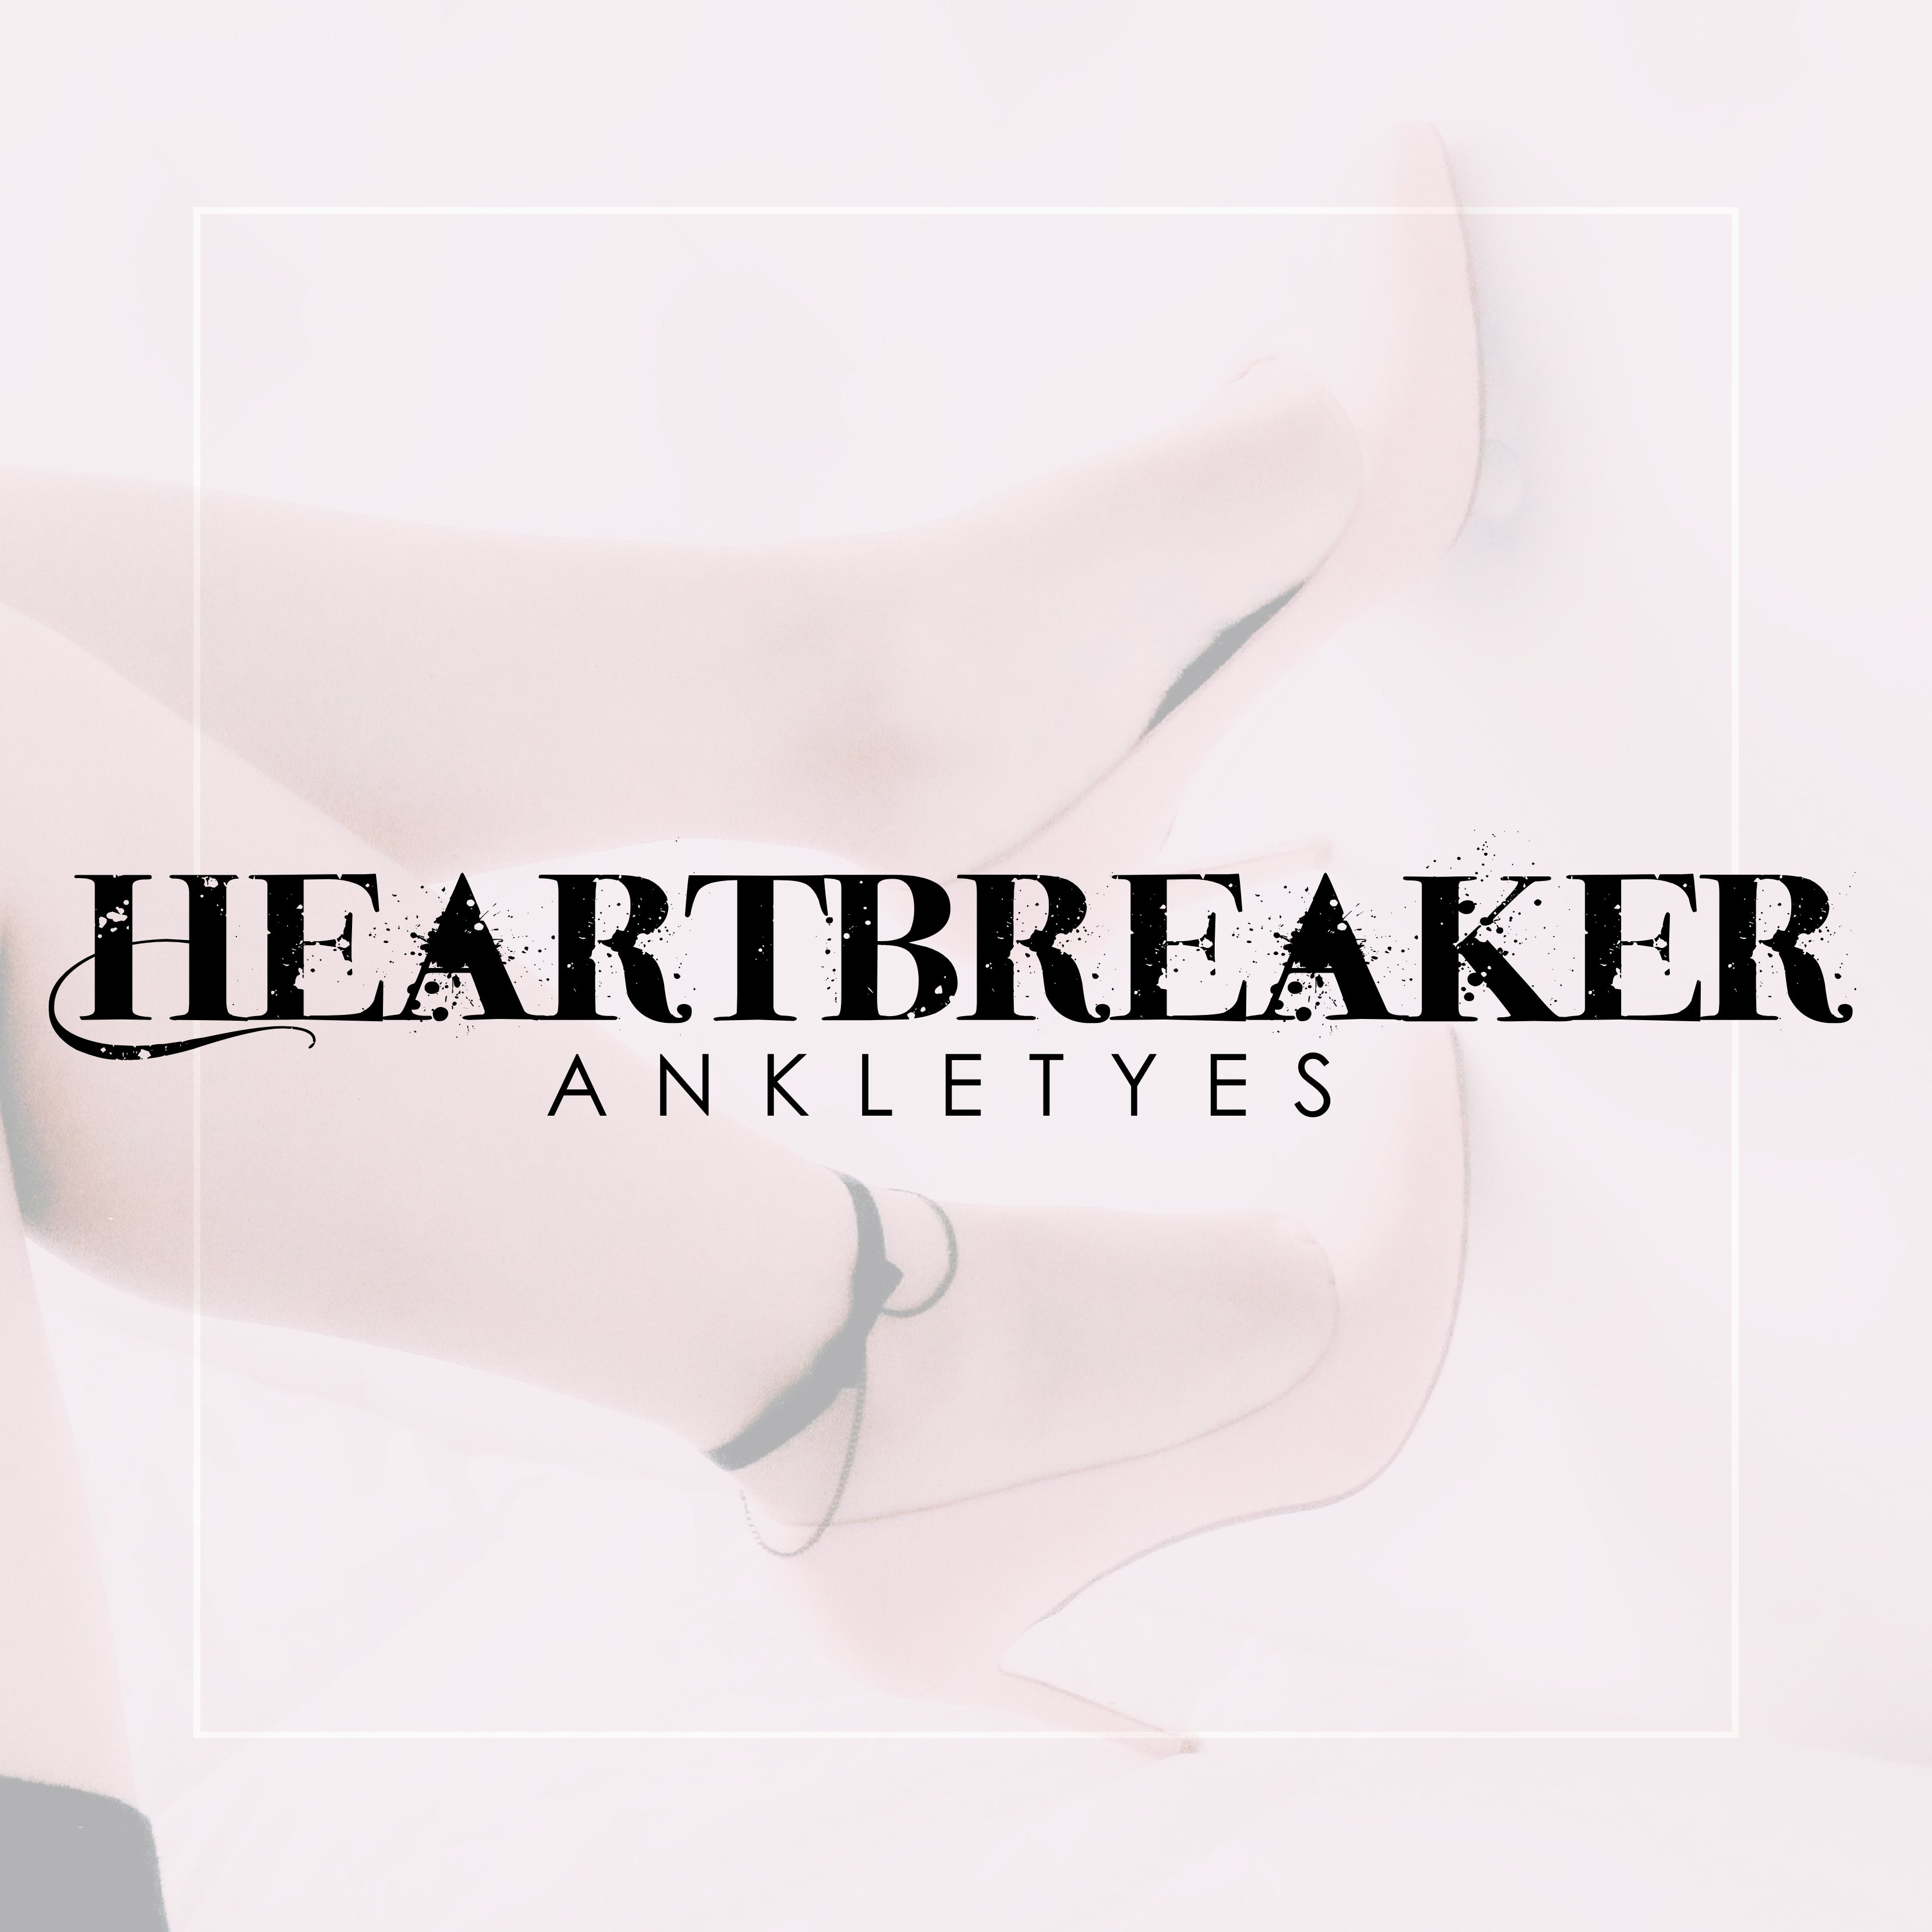 Heartbreaker Ankletyes Display + Wholesale